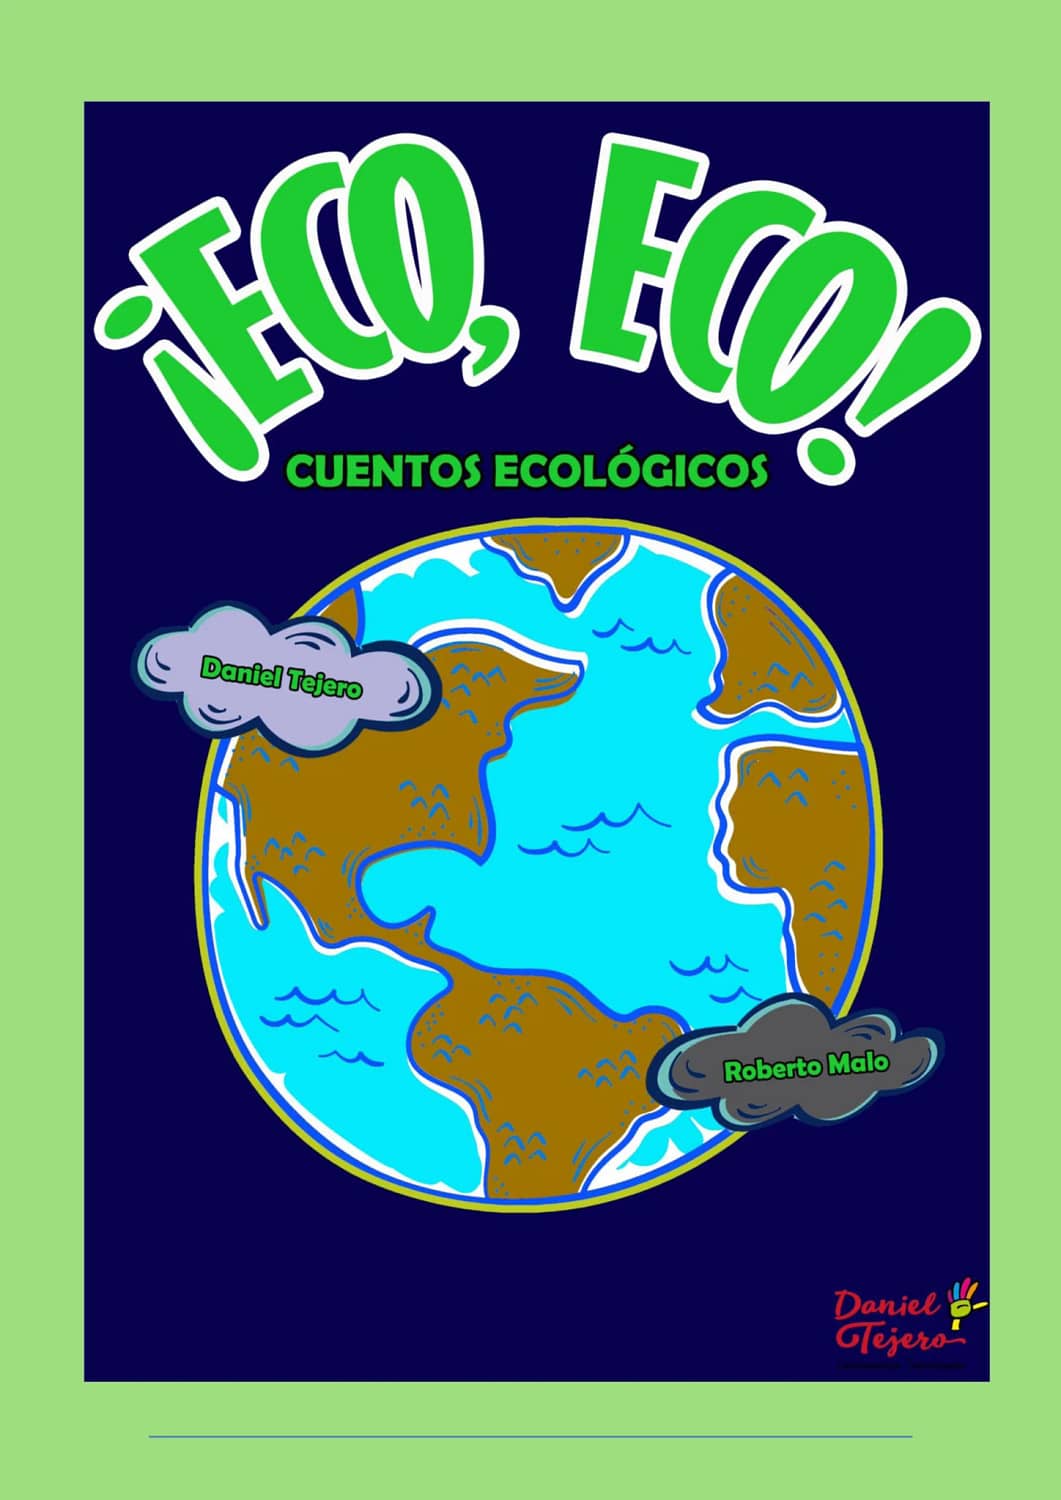 ¡Eco eco! Ecological stories. Storytelling